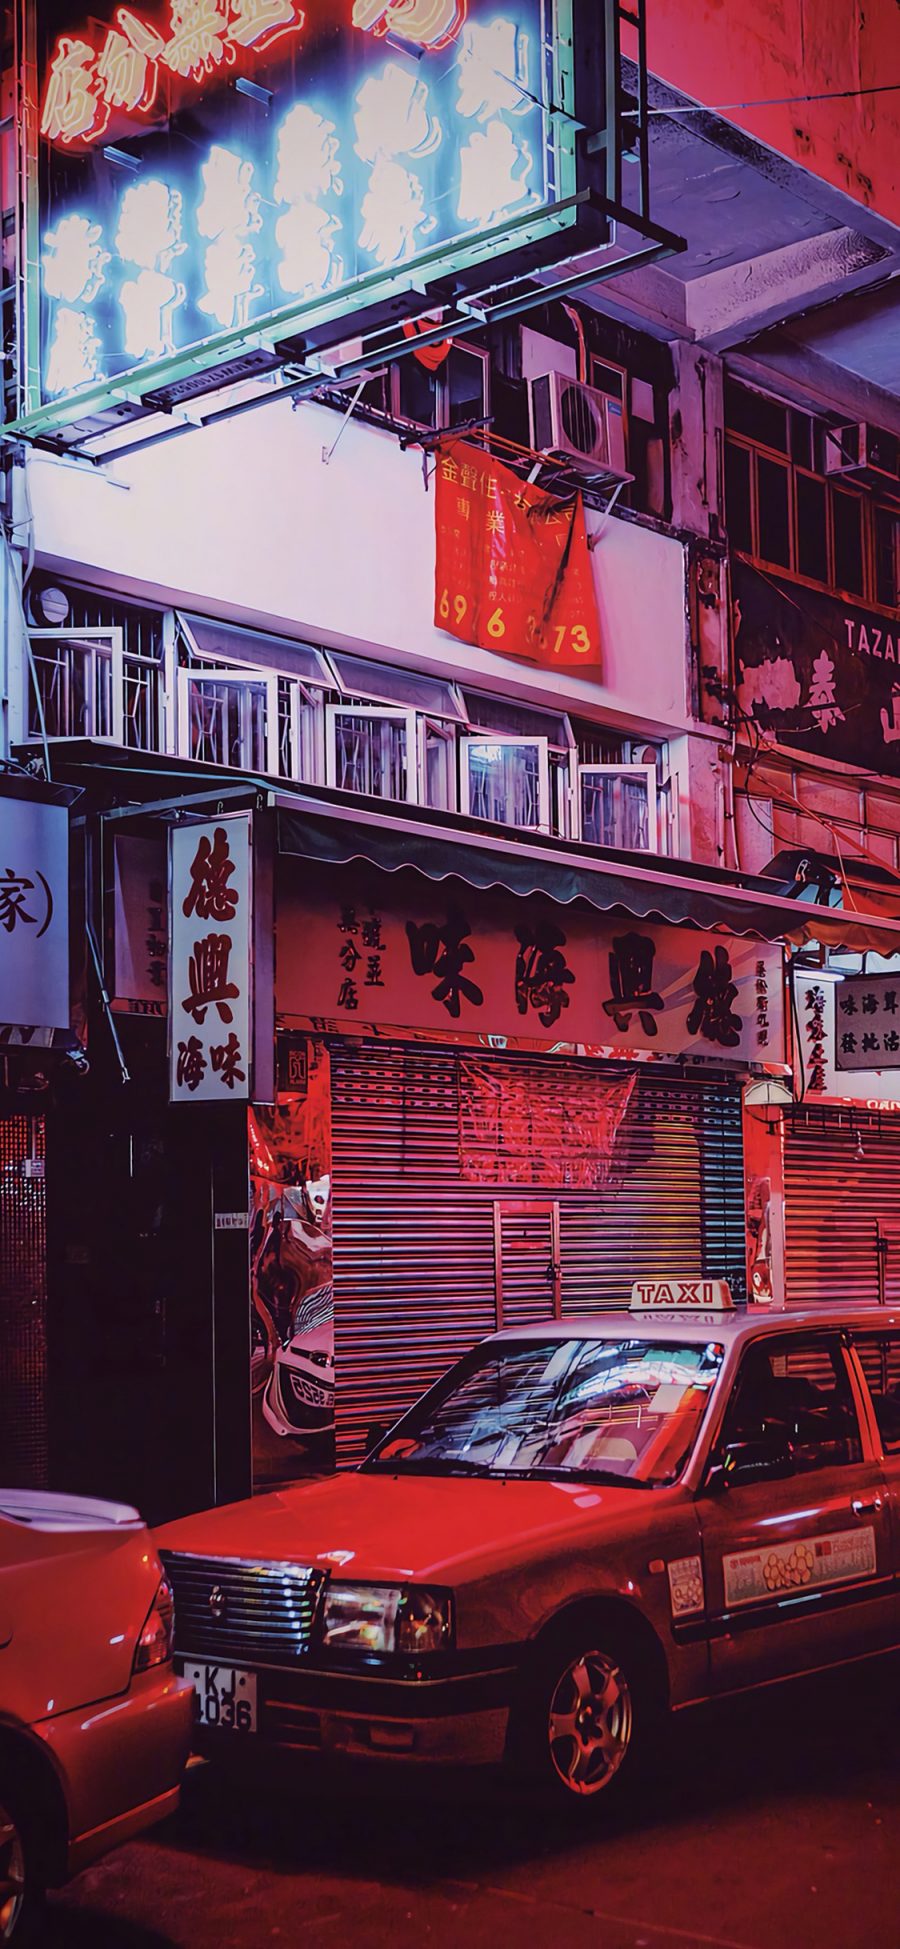 [2436×1125]香港 招牌 的士 商铺 店铺 街道 苹果手机壁纸图片